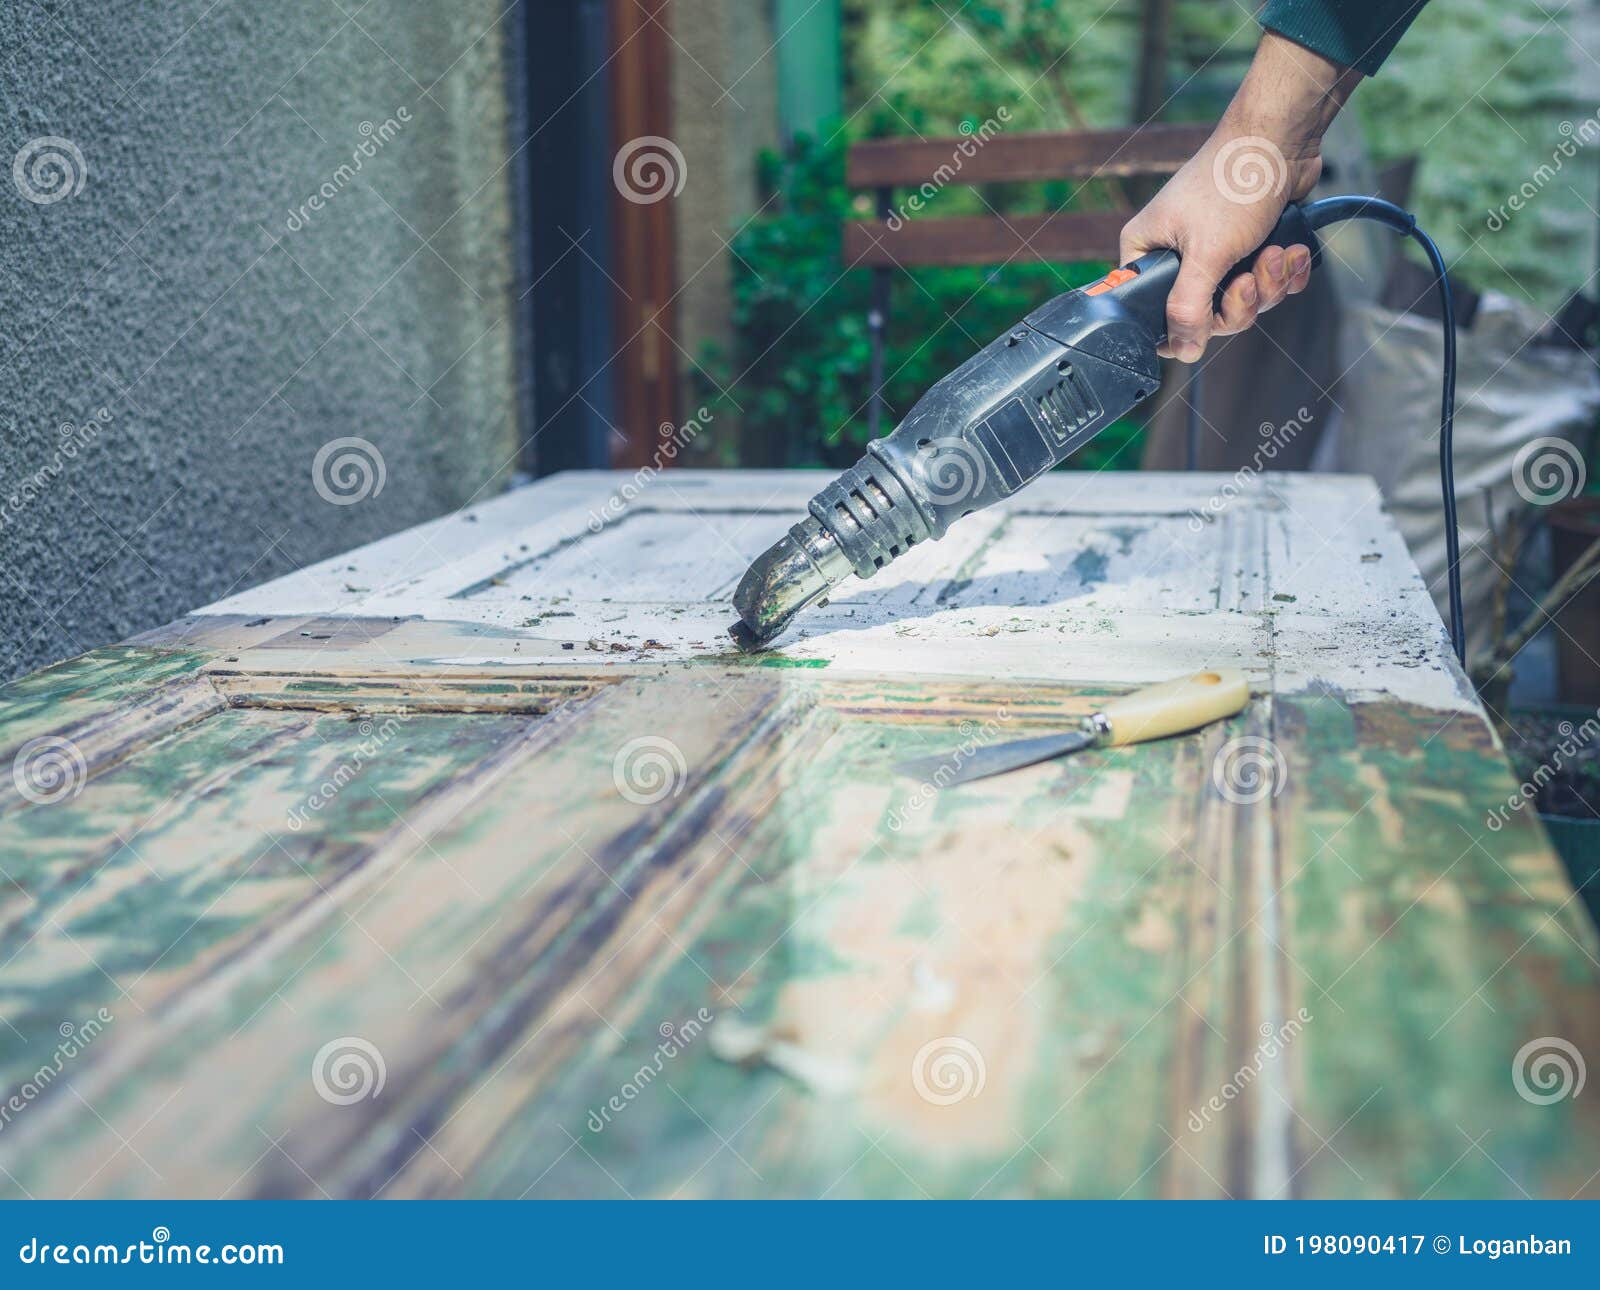 man stripping paint with heat gun